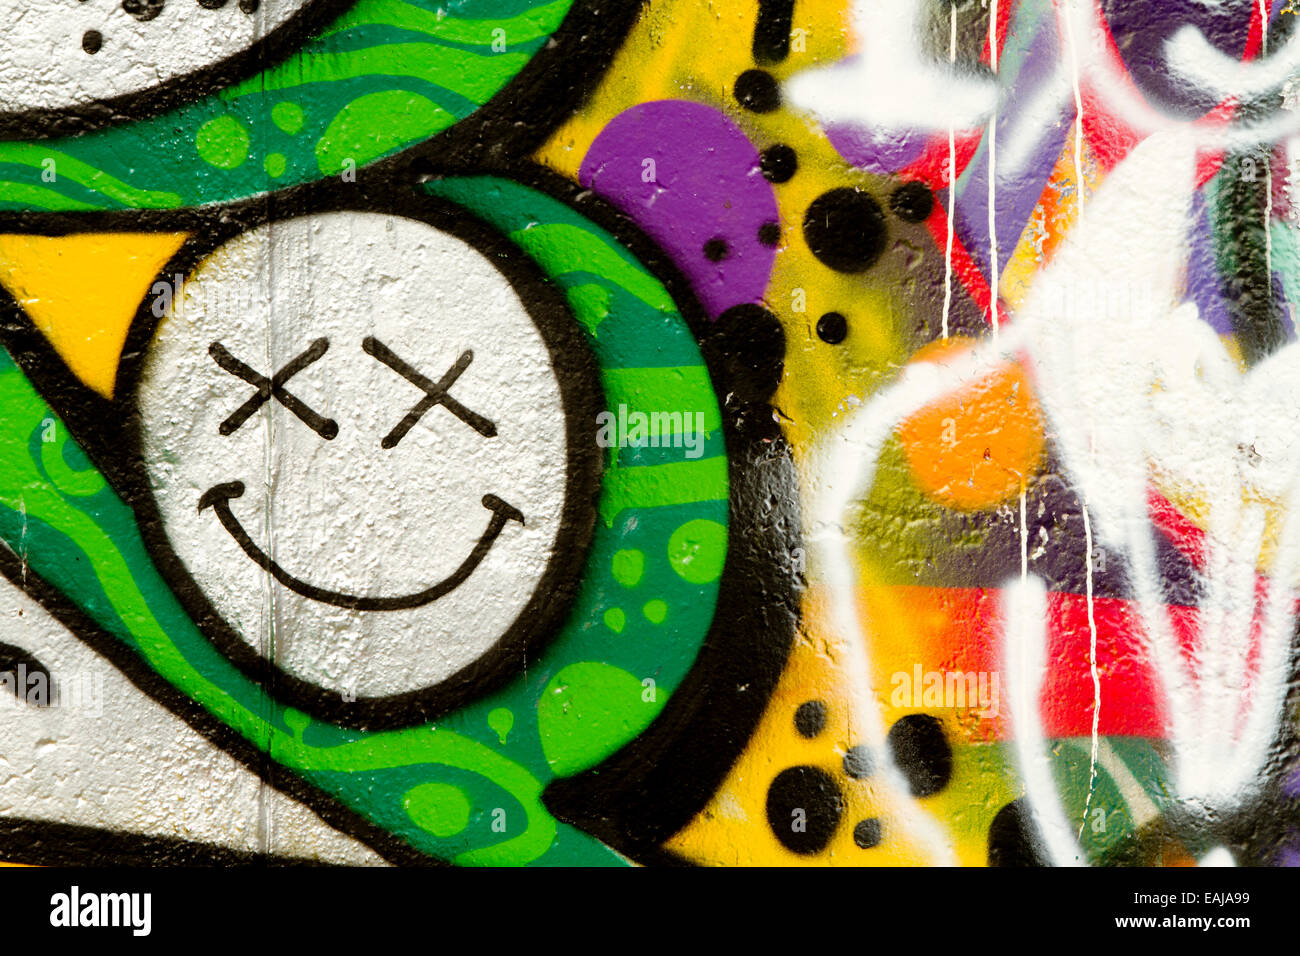 Graffiti tag art urban Berlin Wall happy face Stock Photo